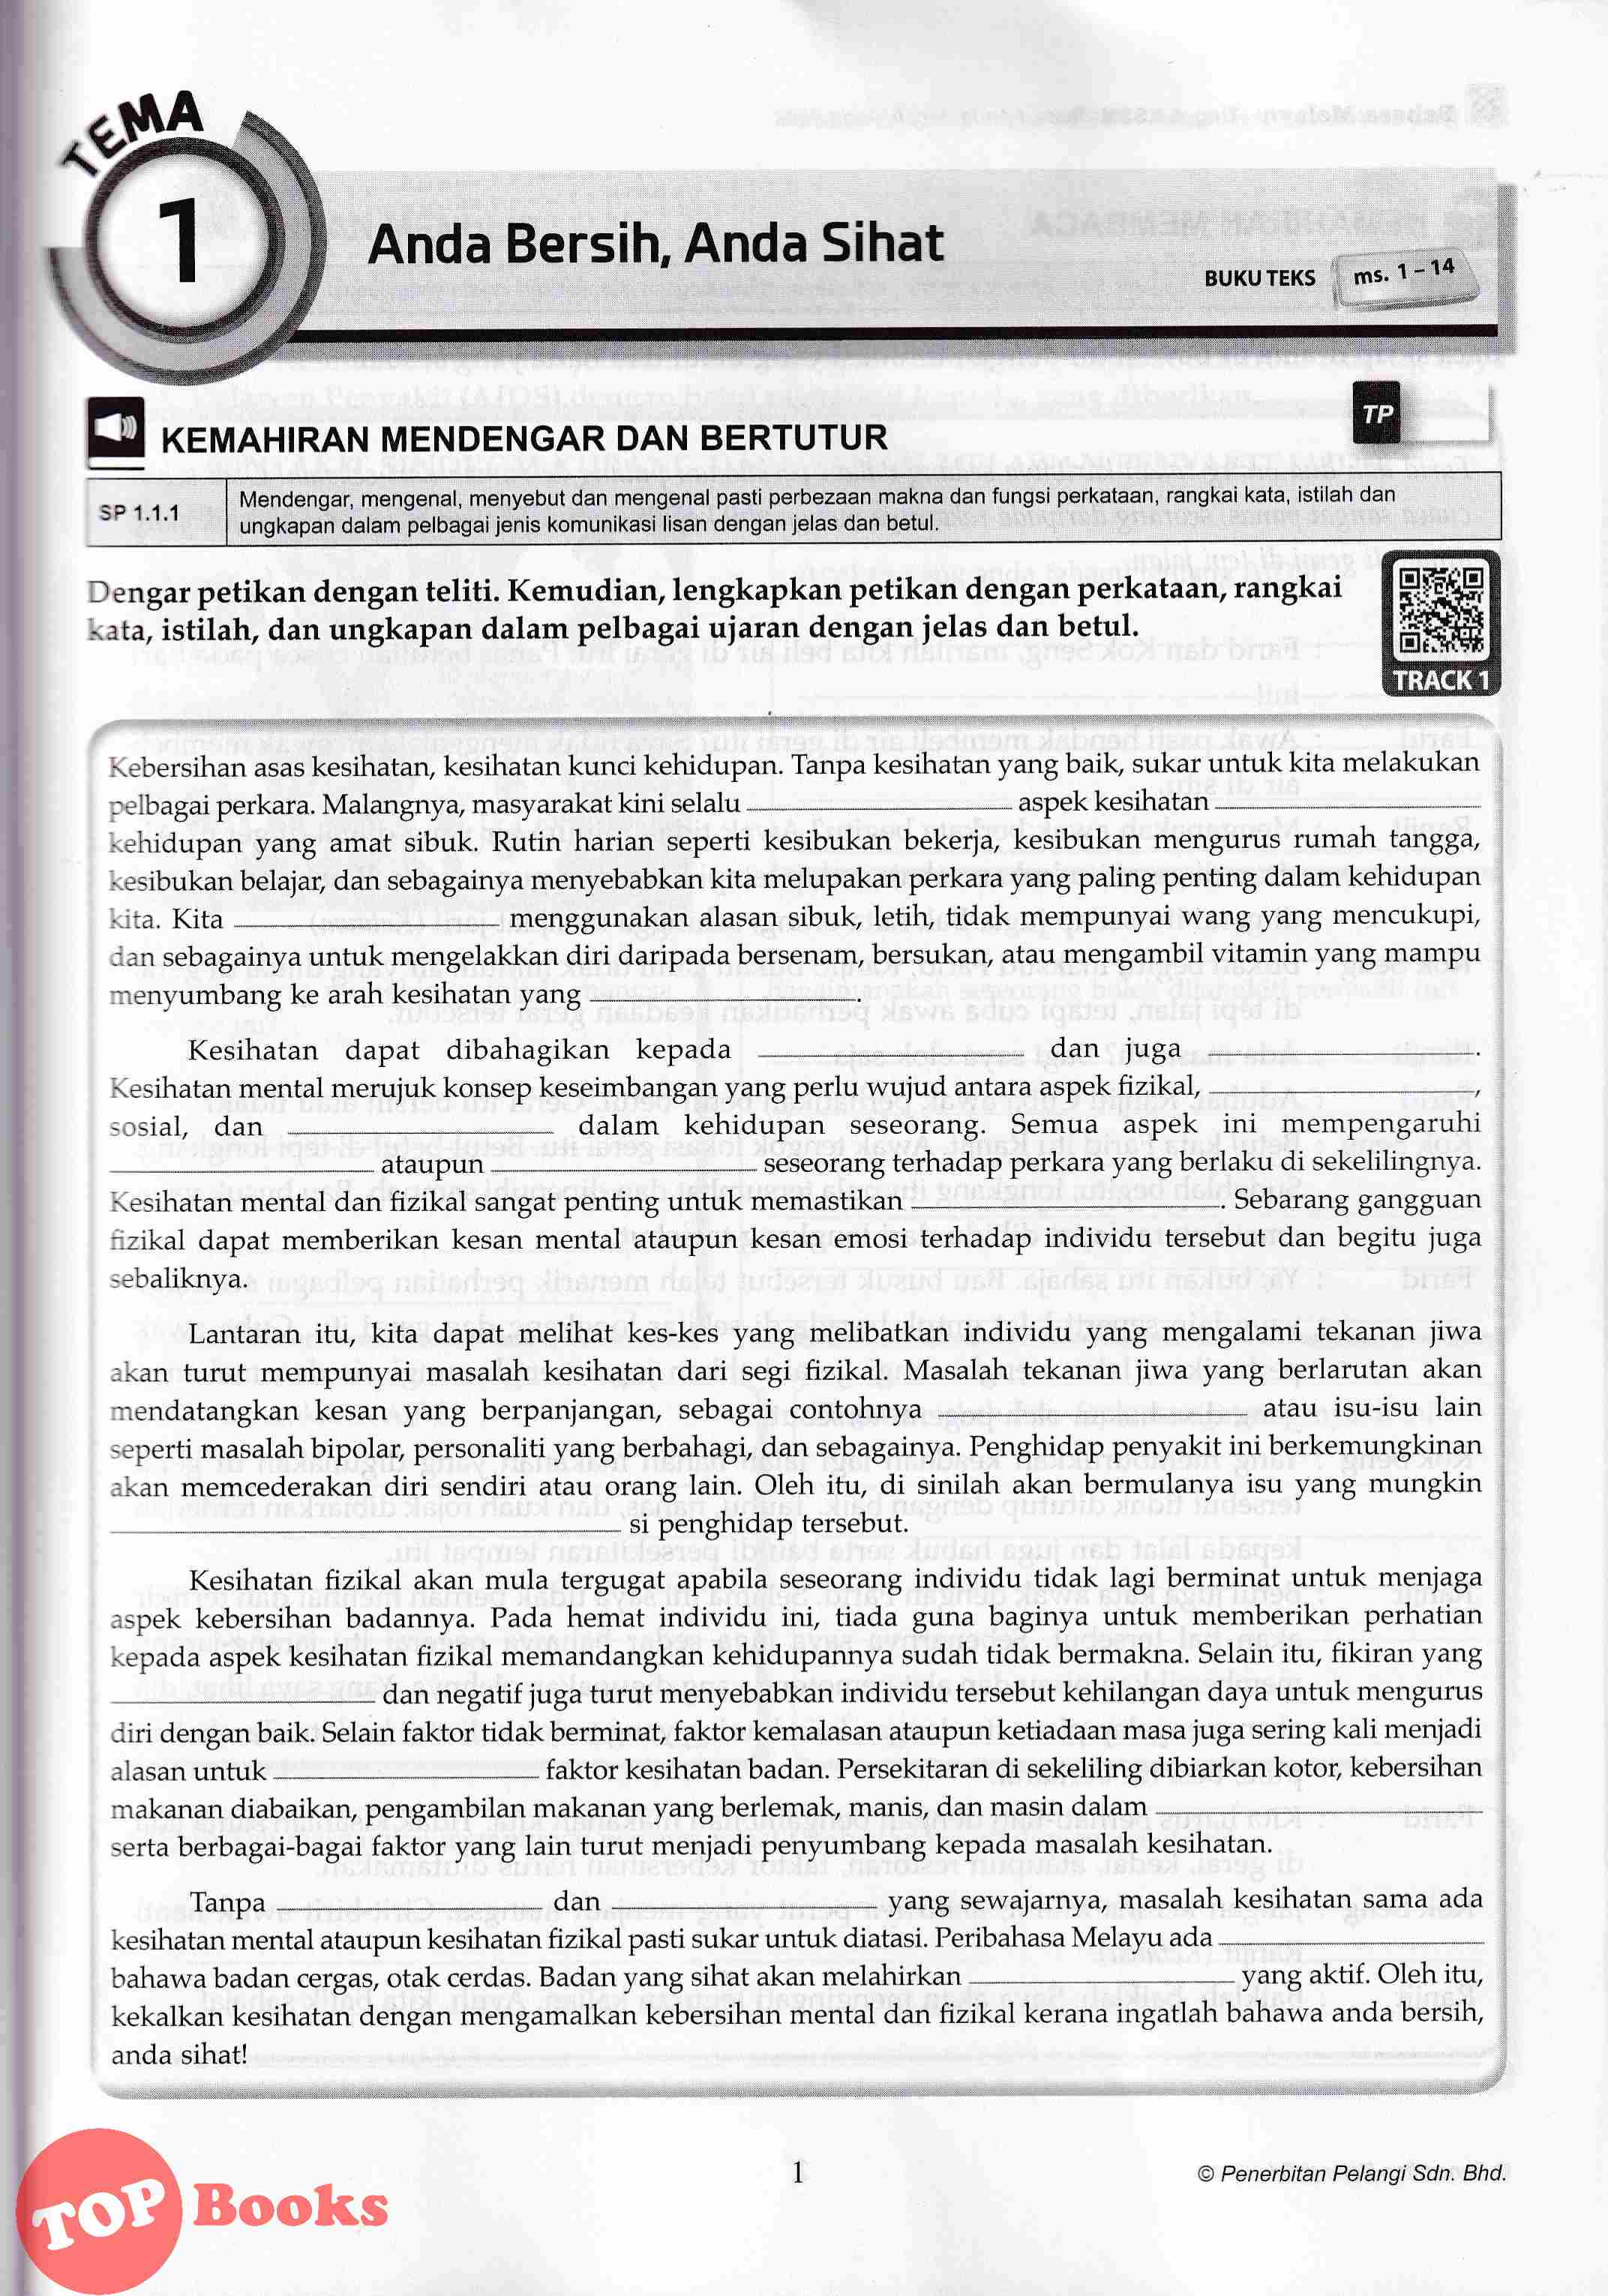 Topbooks Pelangi Top Class Bahasa Melayu Tingkatan 5 Kssm 2021